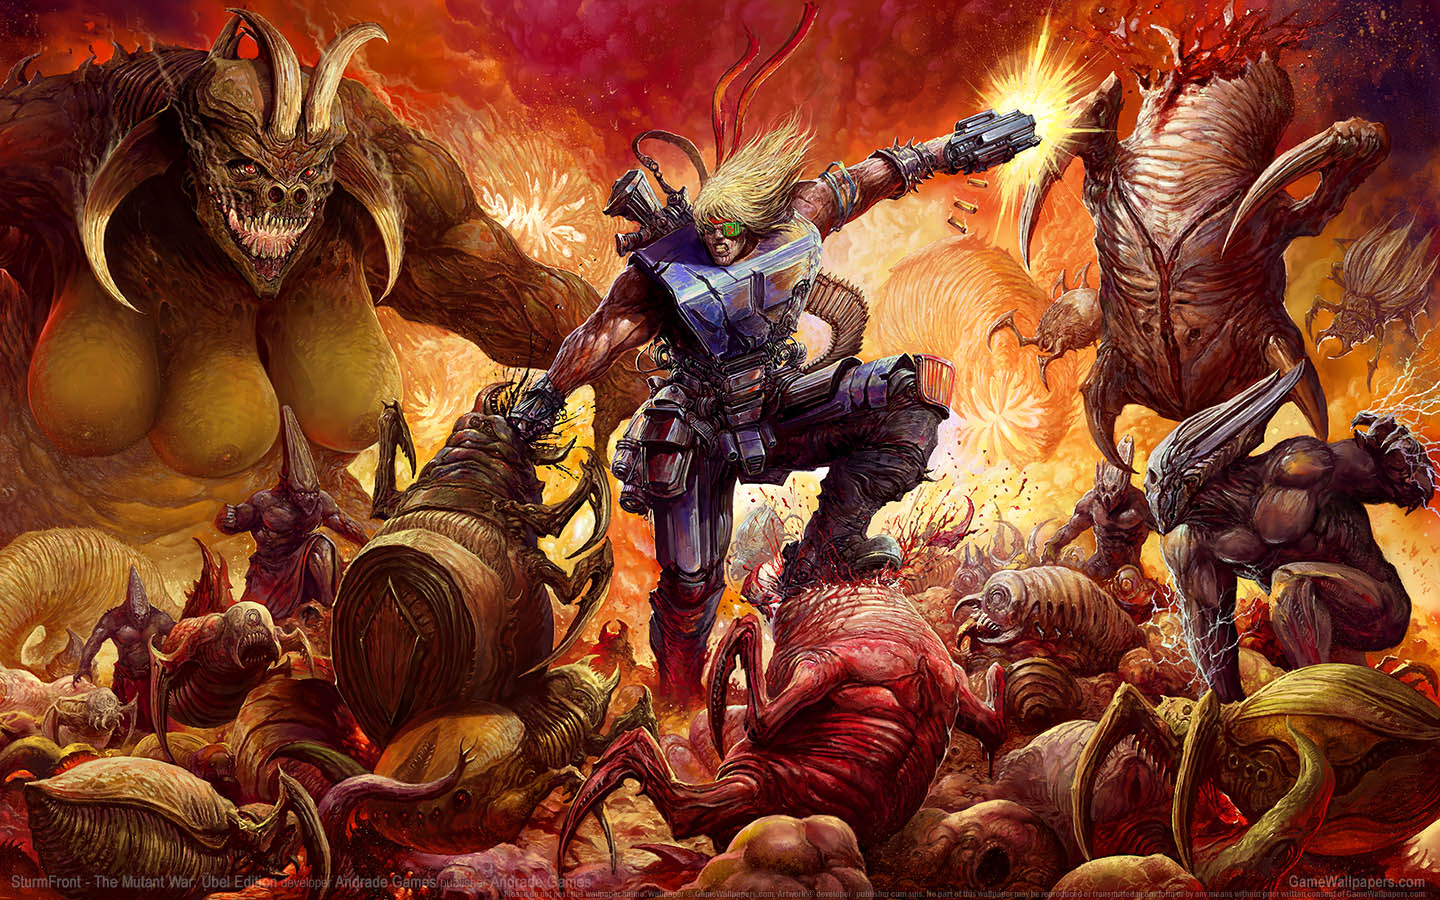 SturmFront - The Mutant War: Ubel Edition achtergrond 01 1440x900